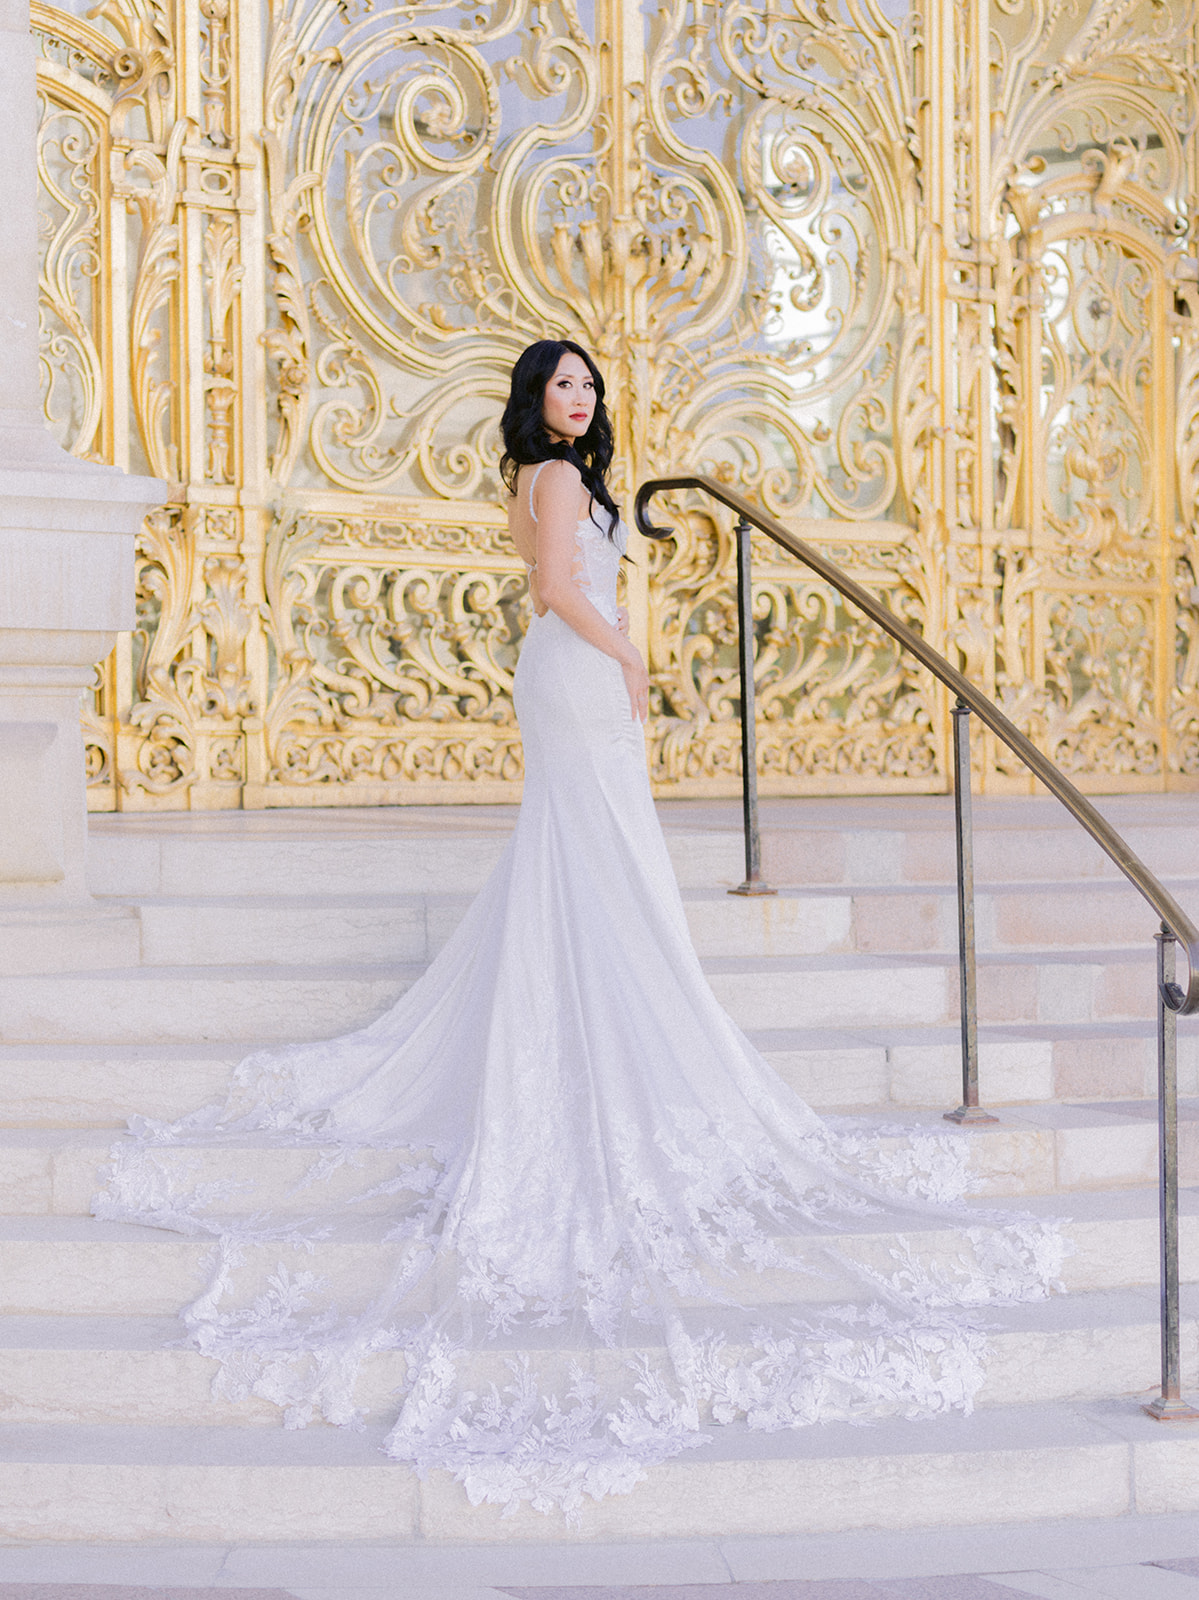 Bride posing in front of golden doors in Paris